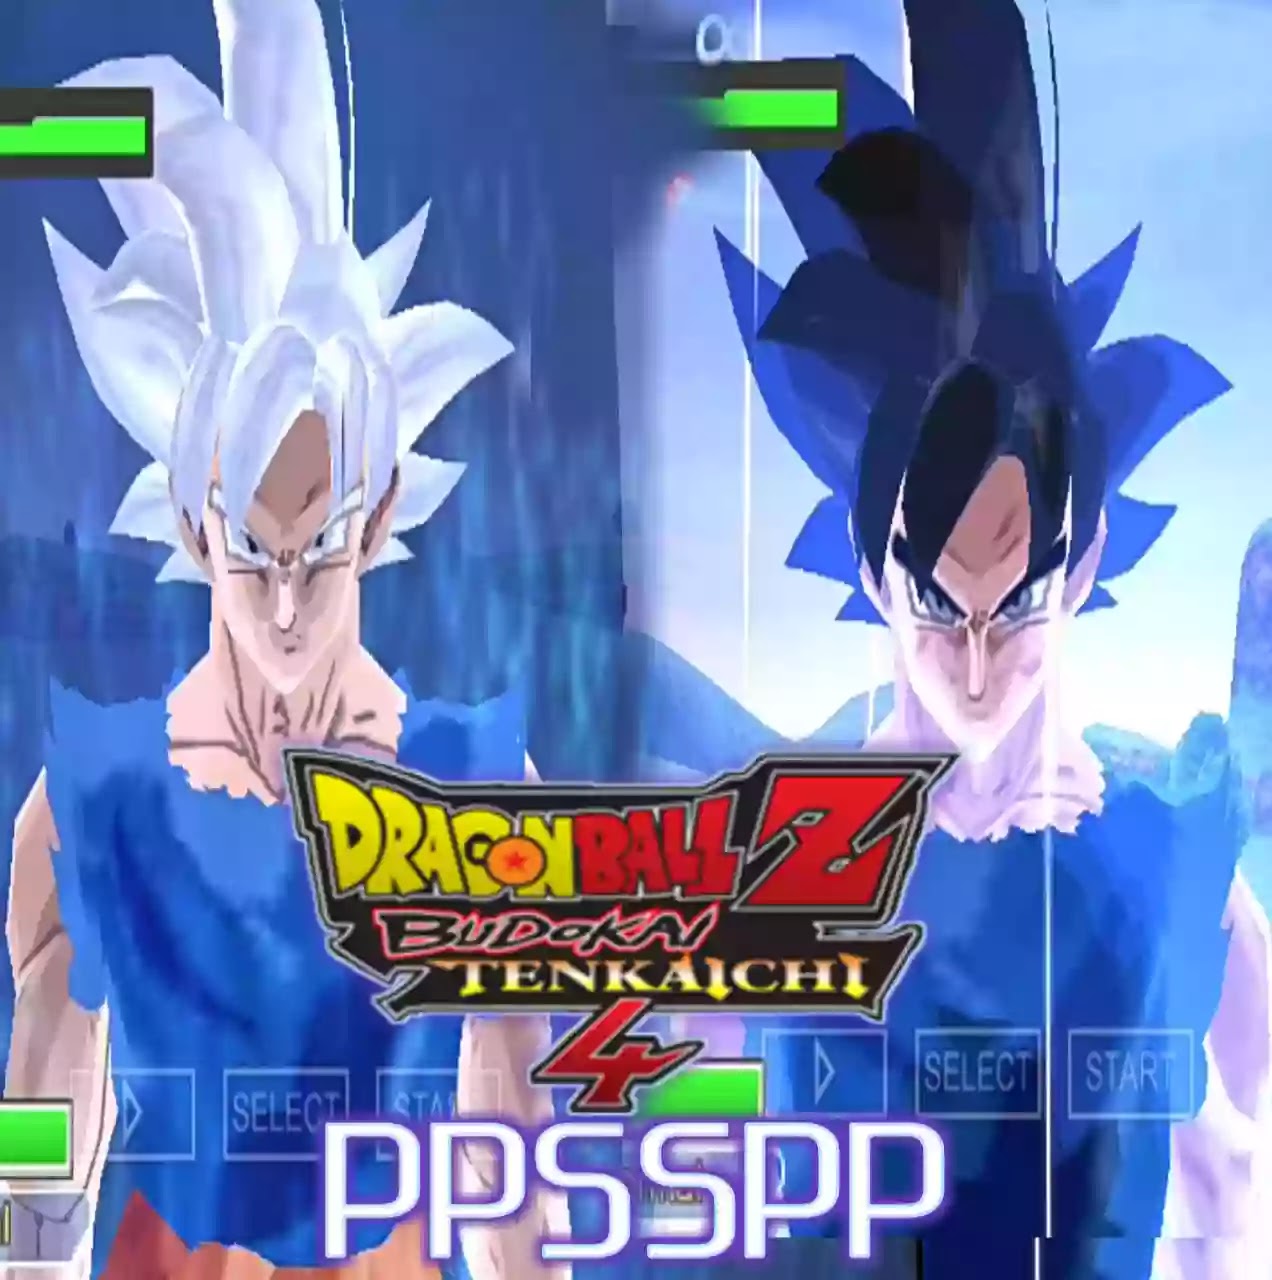 Dragon Ball Z Budokai Tenkaichi 4 PPSSPP ISO Download